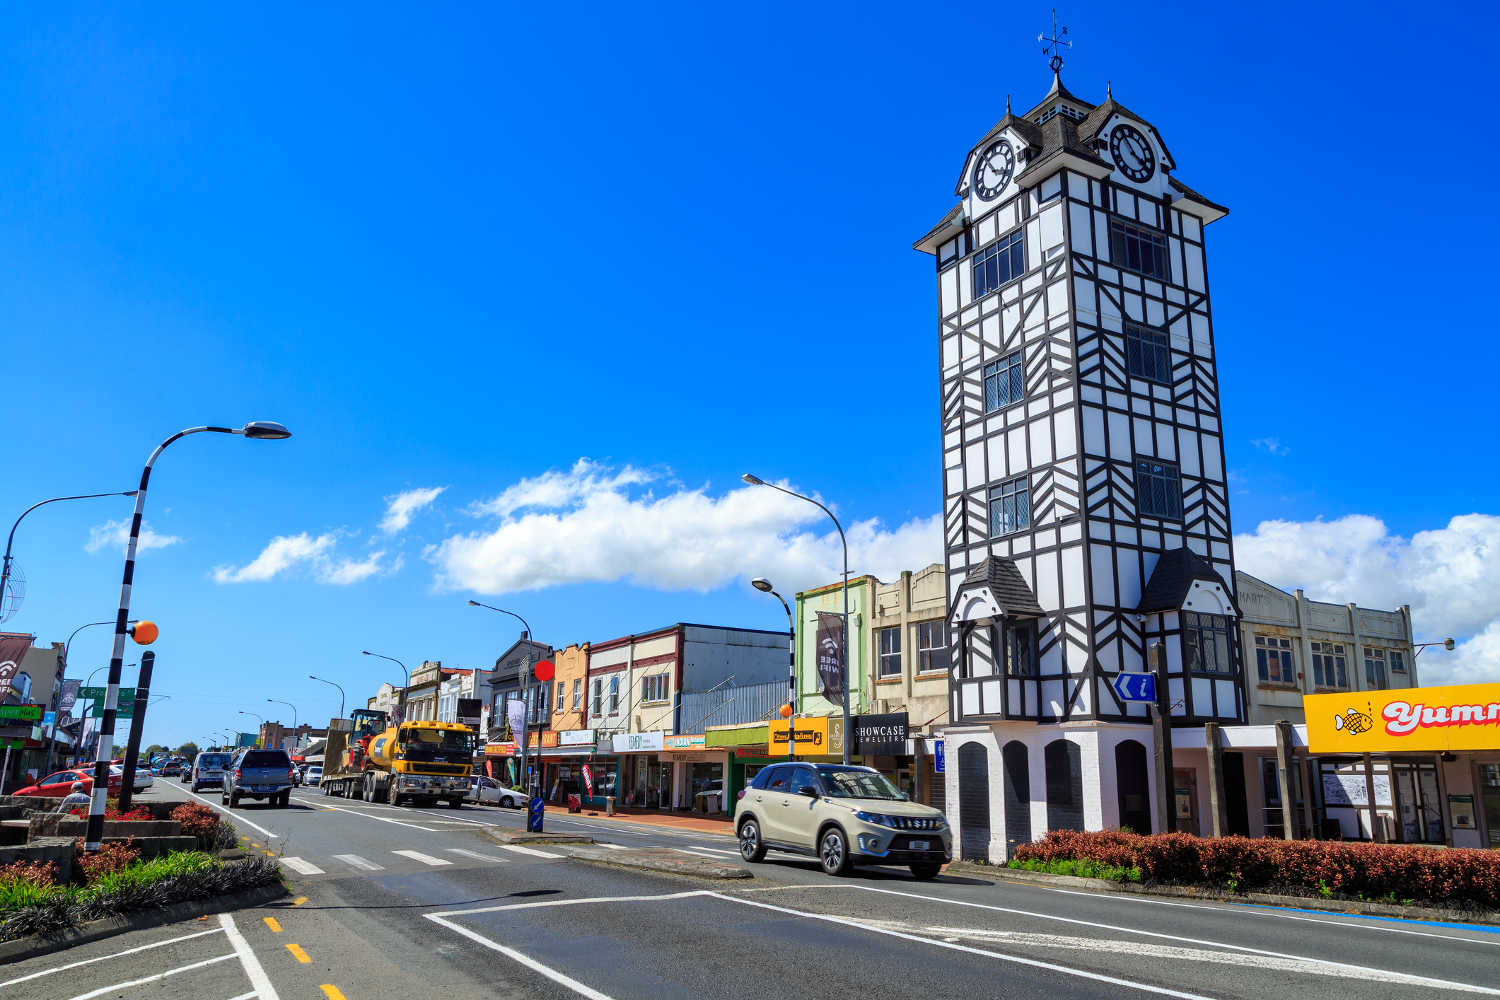 Taranaki, New Zealand